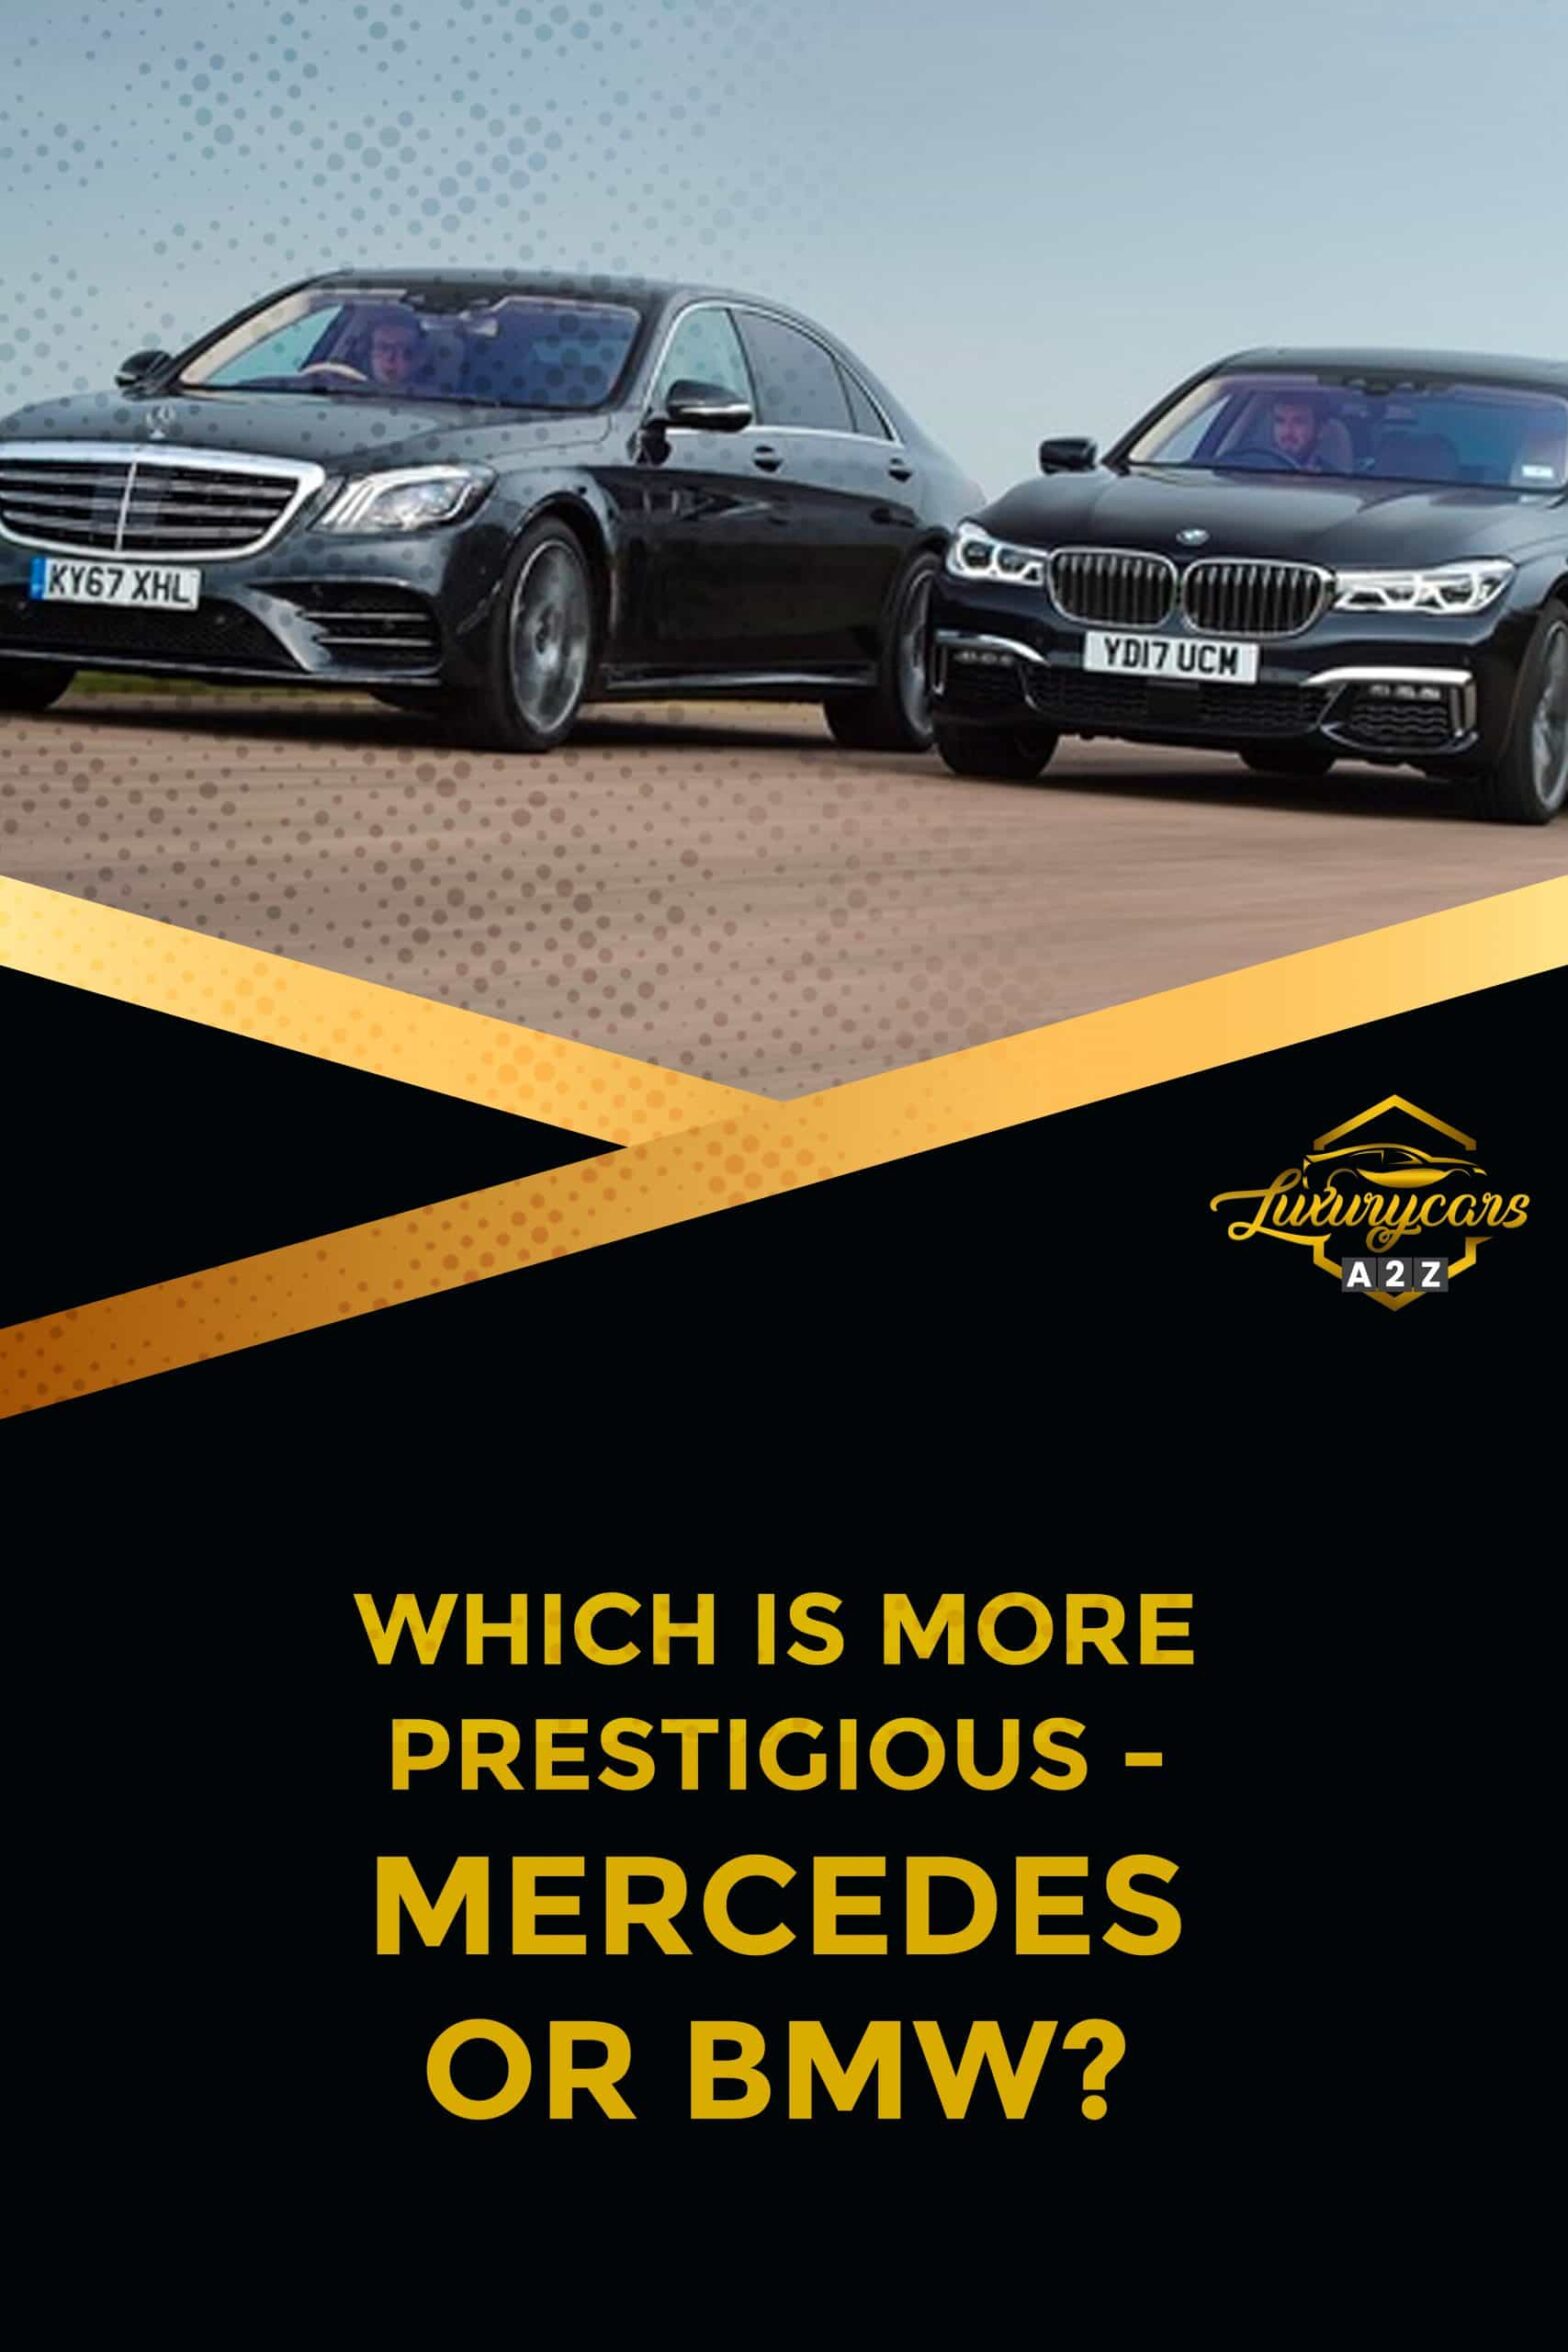 ¿Qué es más prestigioso, Mercedes o BMW?